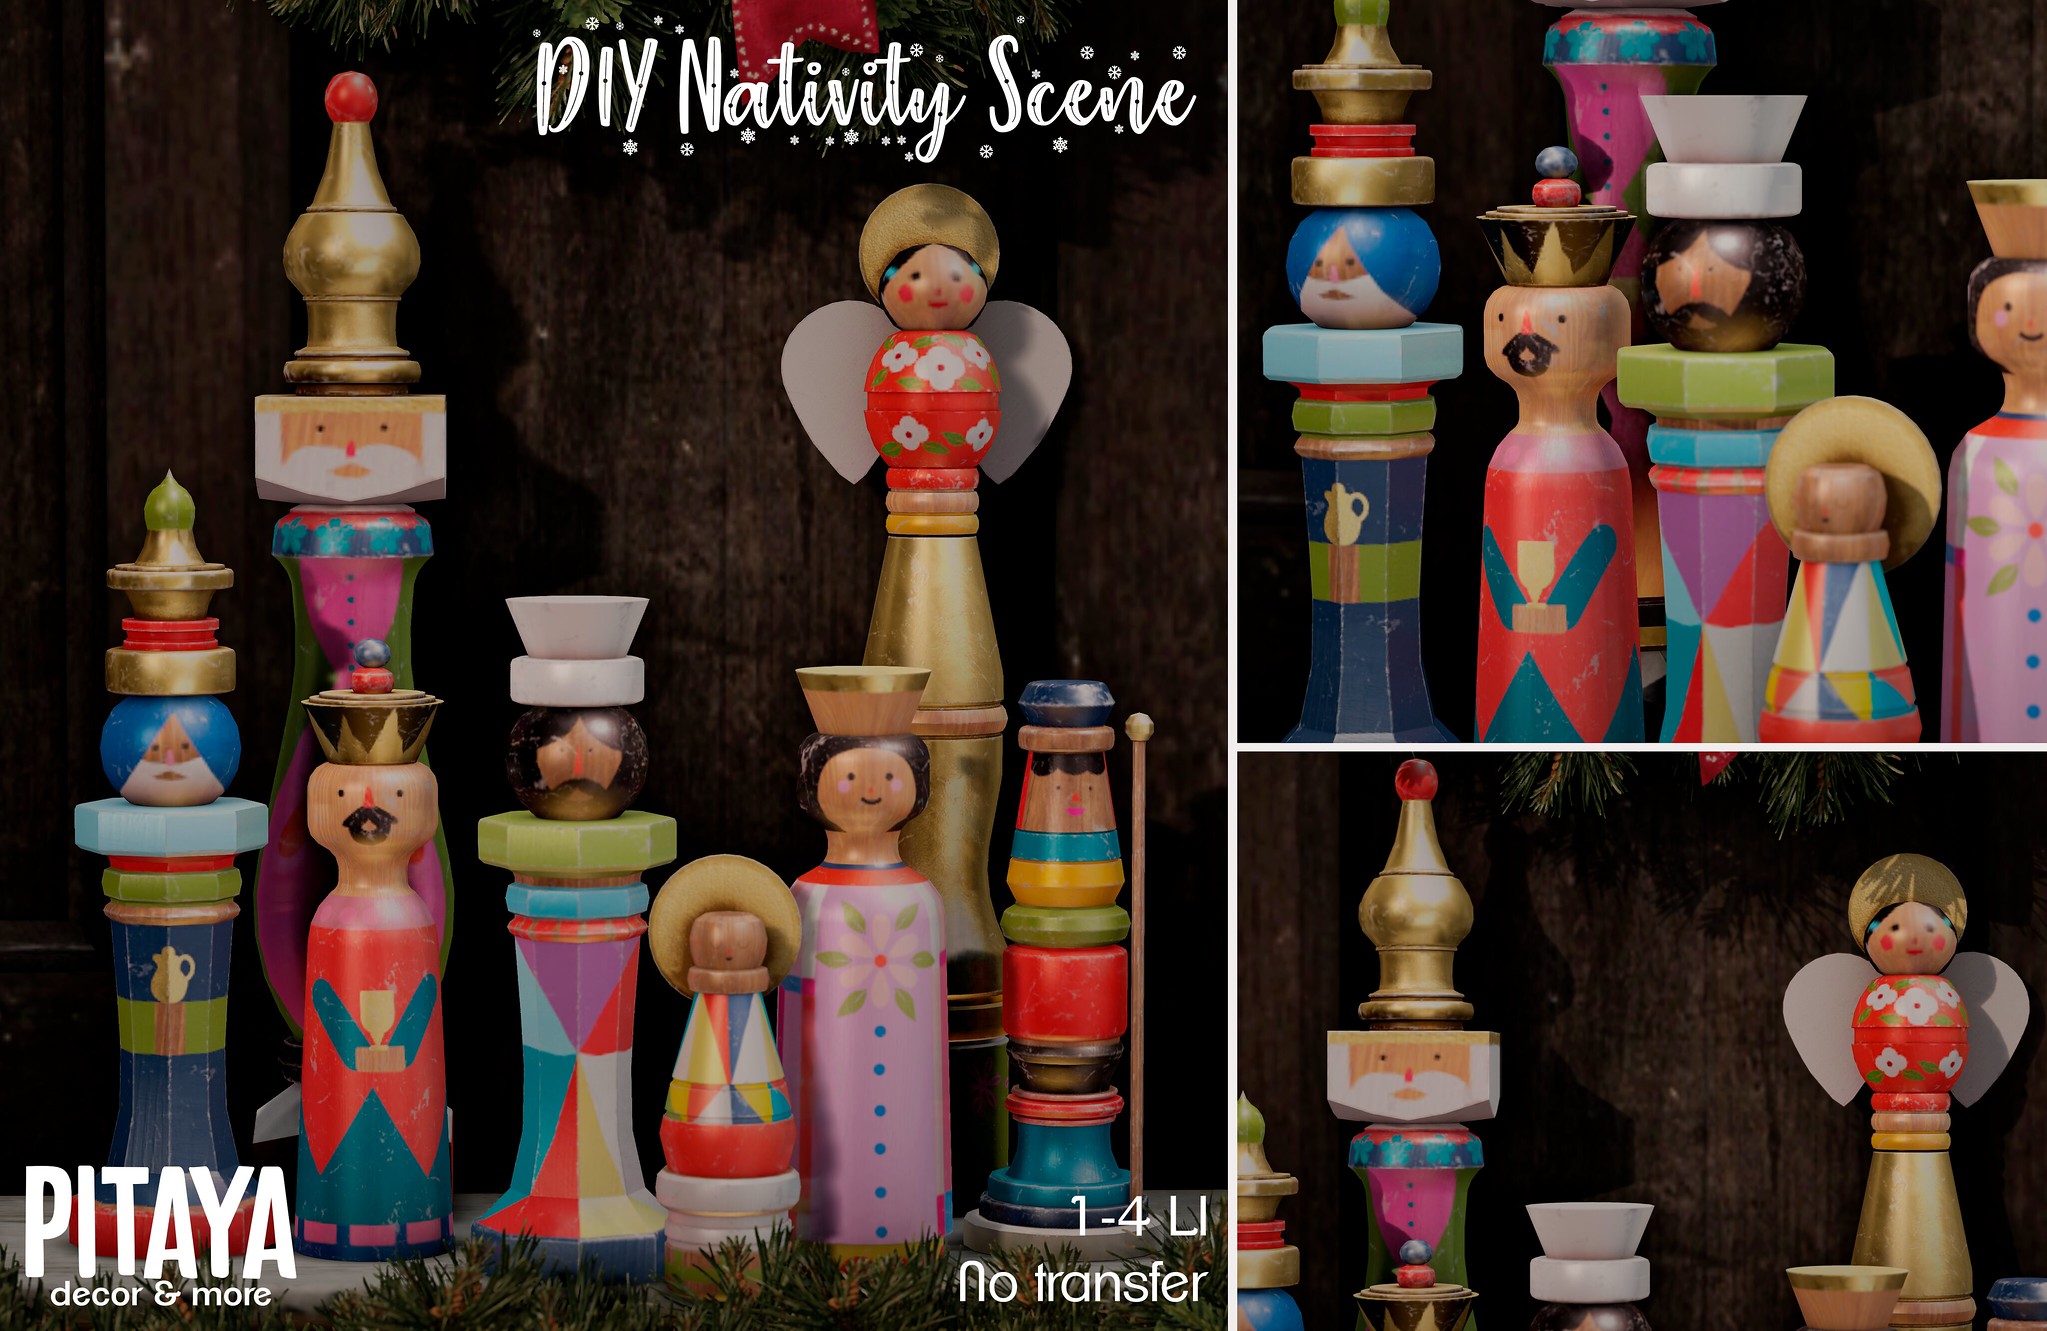 Pitaya – DIY Nativity Scene